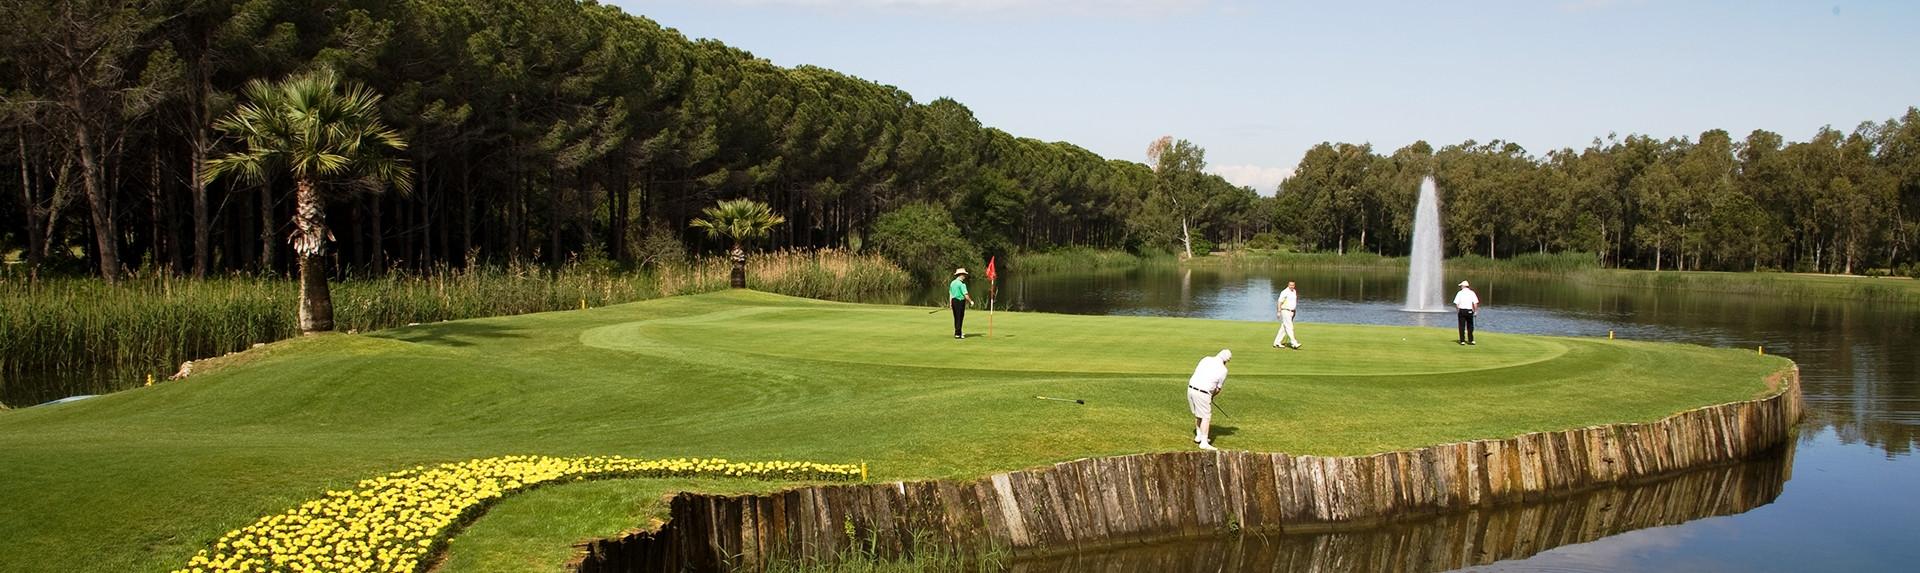 Golf Courses in Belek, Turkey